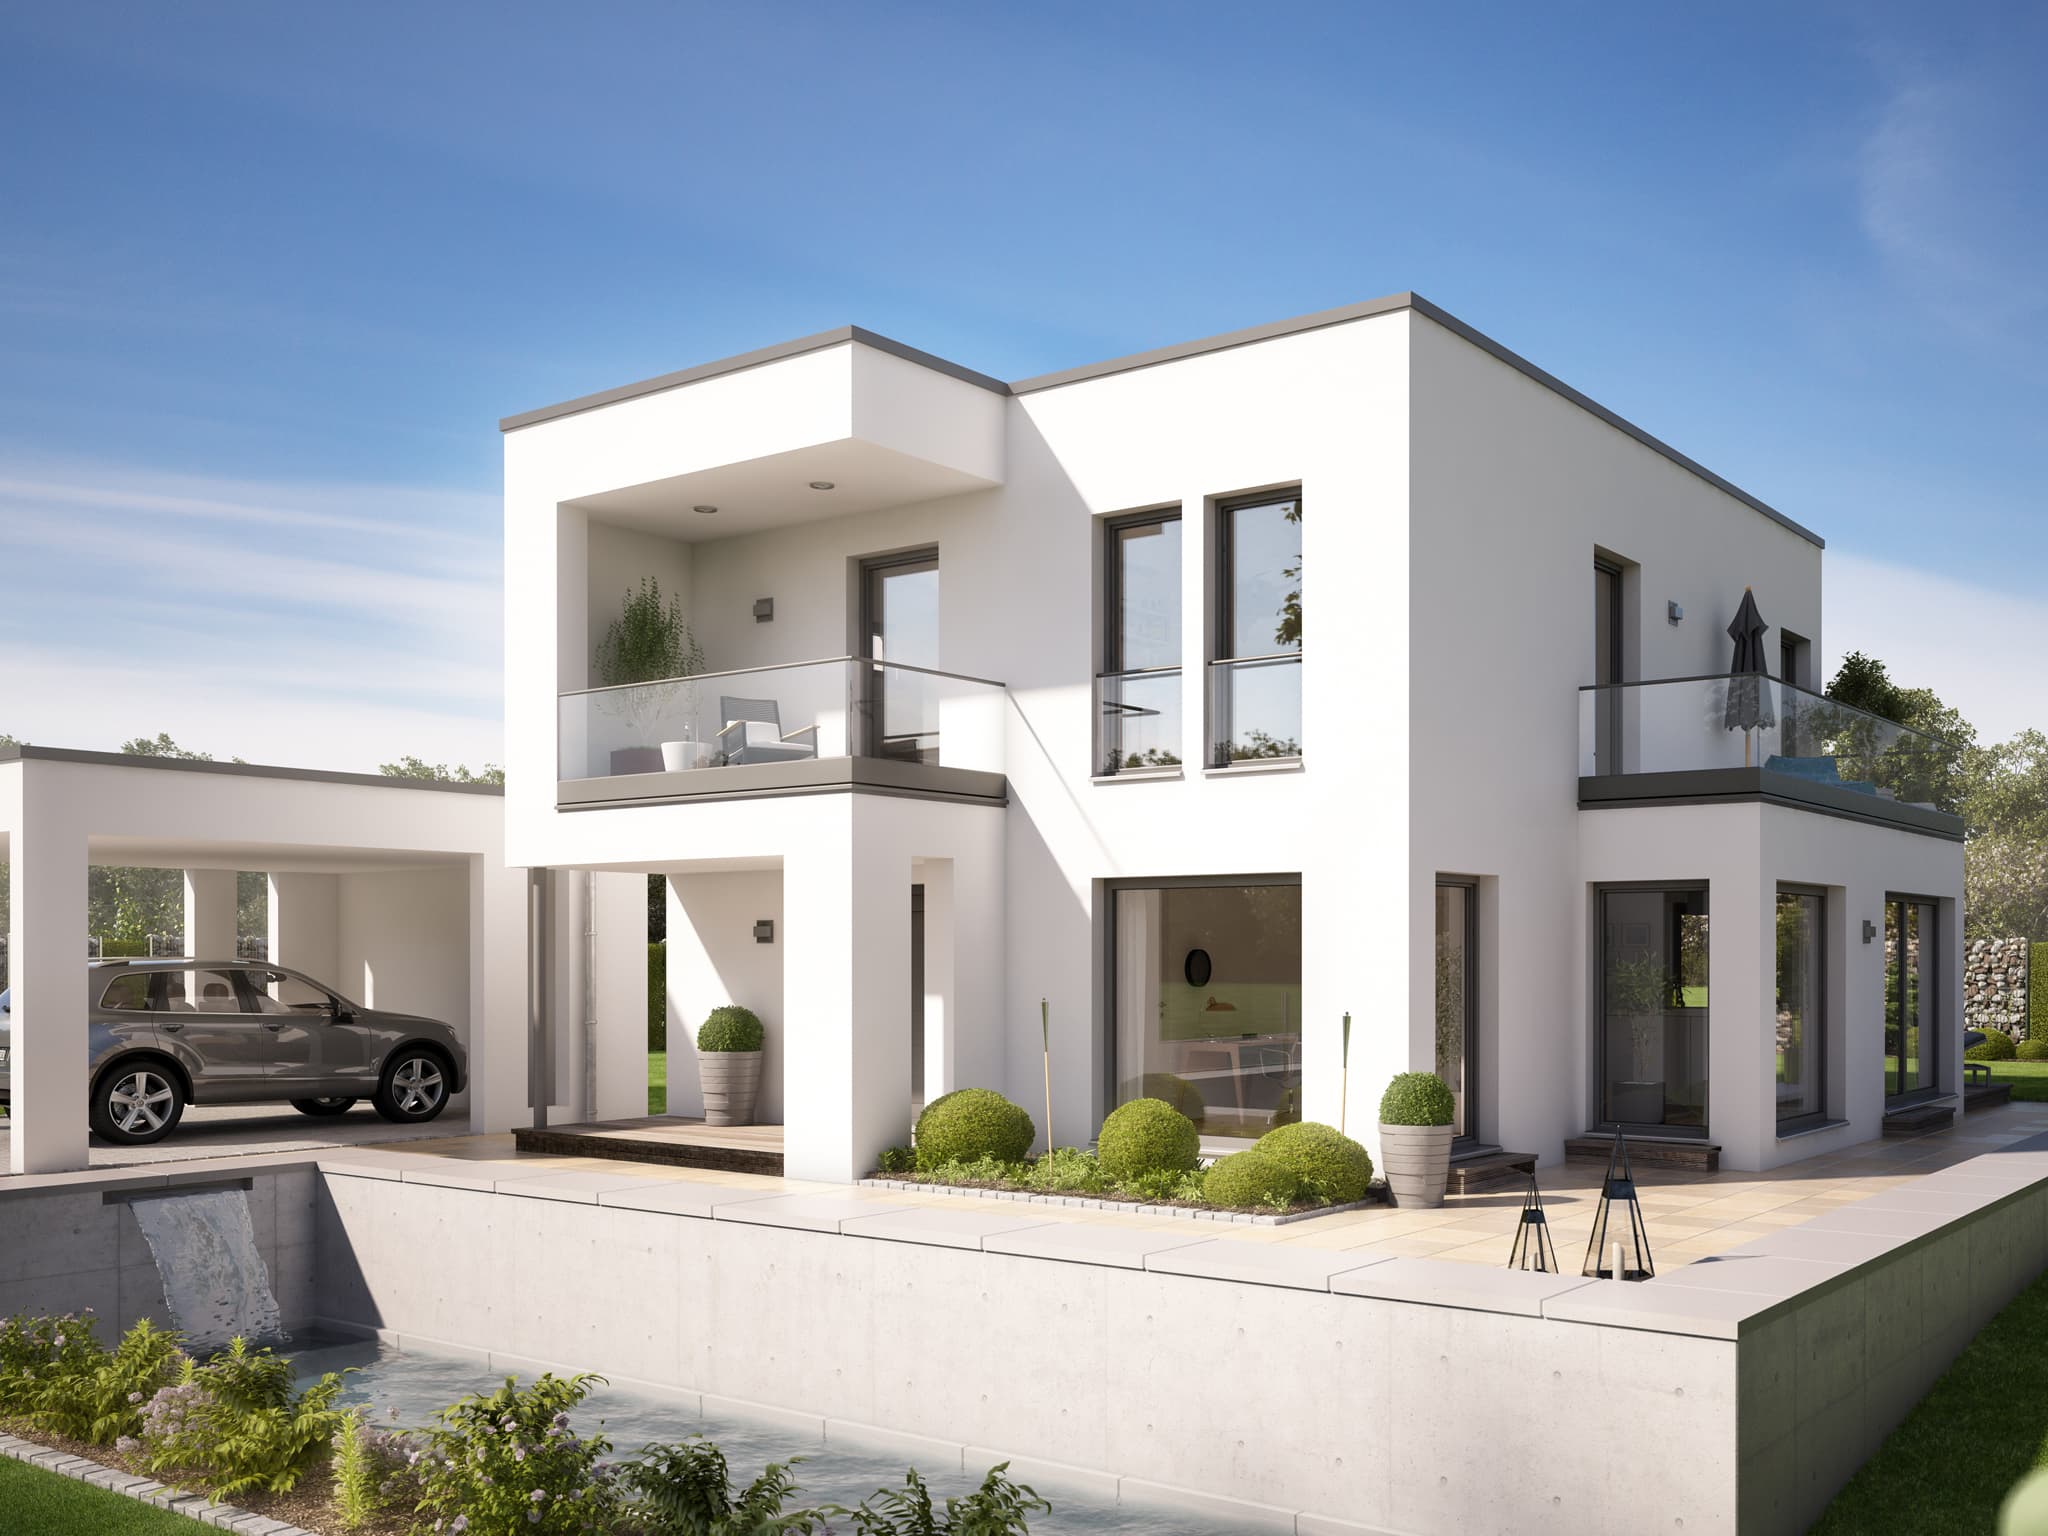 Einfamilienhaus modern im Bauhausstil mit Flachdach Architektur, Doppelcarport Garage & Erker mit Balkon - Haus bauen Ideen Bien Zenker Fertighaus EVOLUTION 134 V8 - HausbauDirekt.de